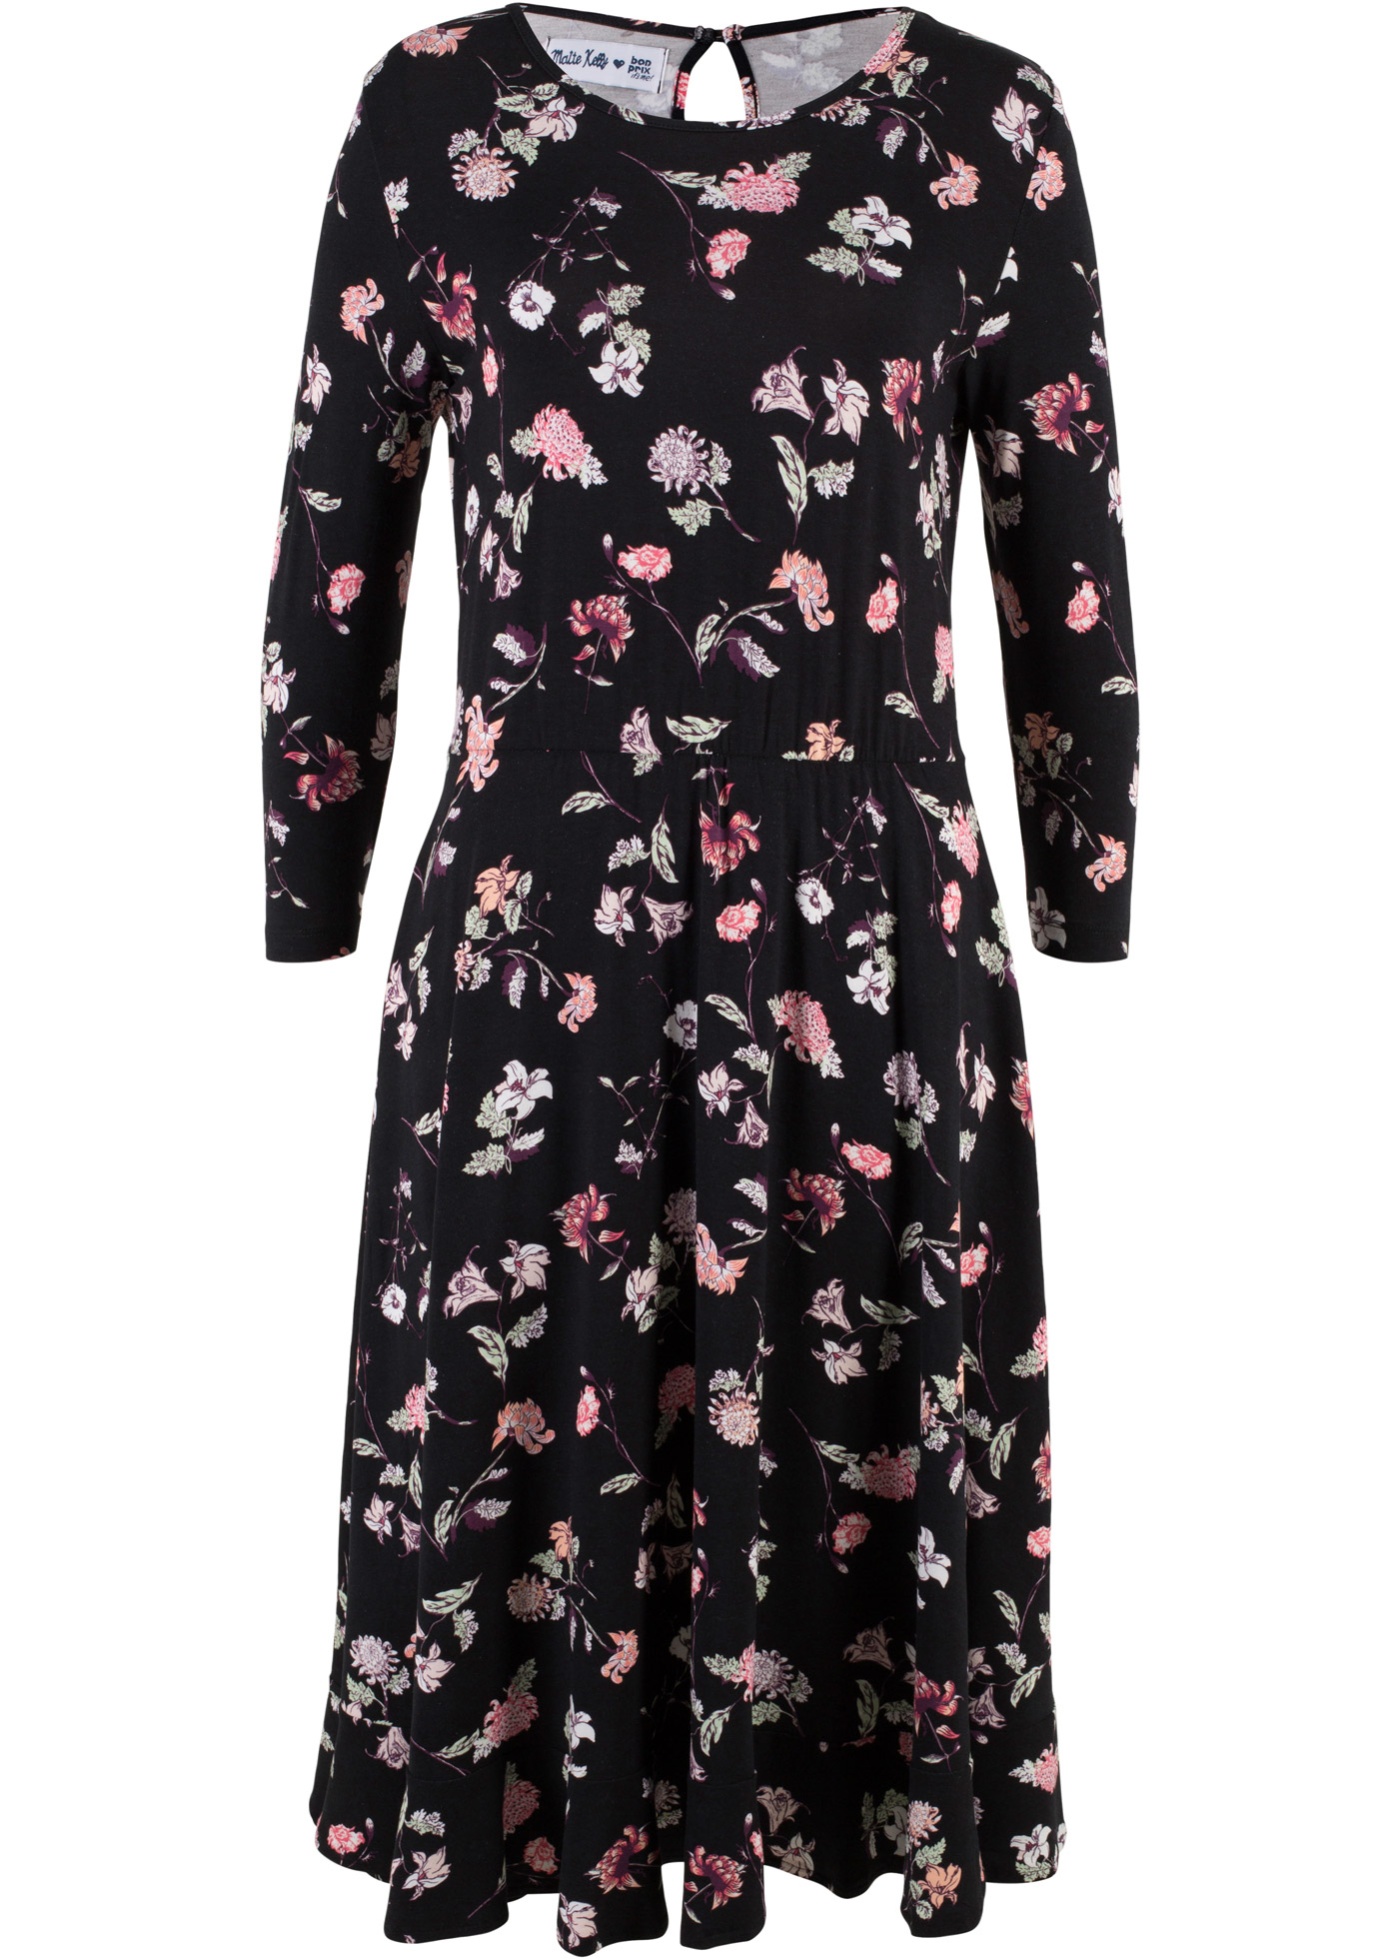 Валберис платье шифон. Bonprix платье от Maite Kelly. Платье Золла цветочный принт. Бонприкс платье в цветочек. Черное платье в цветочек.